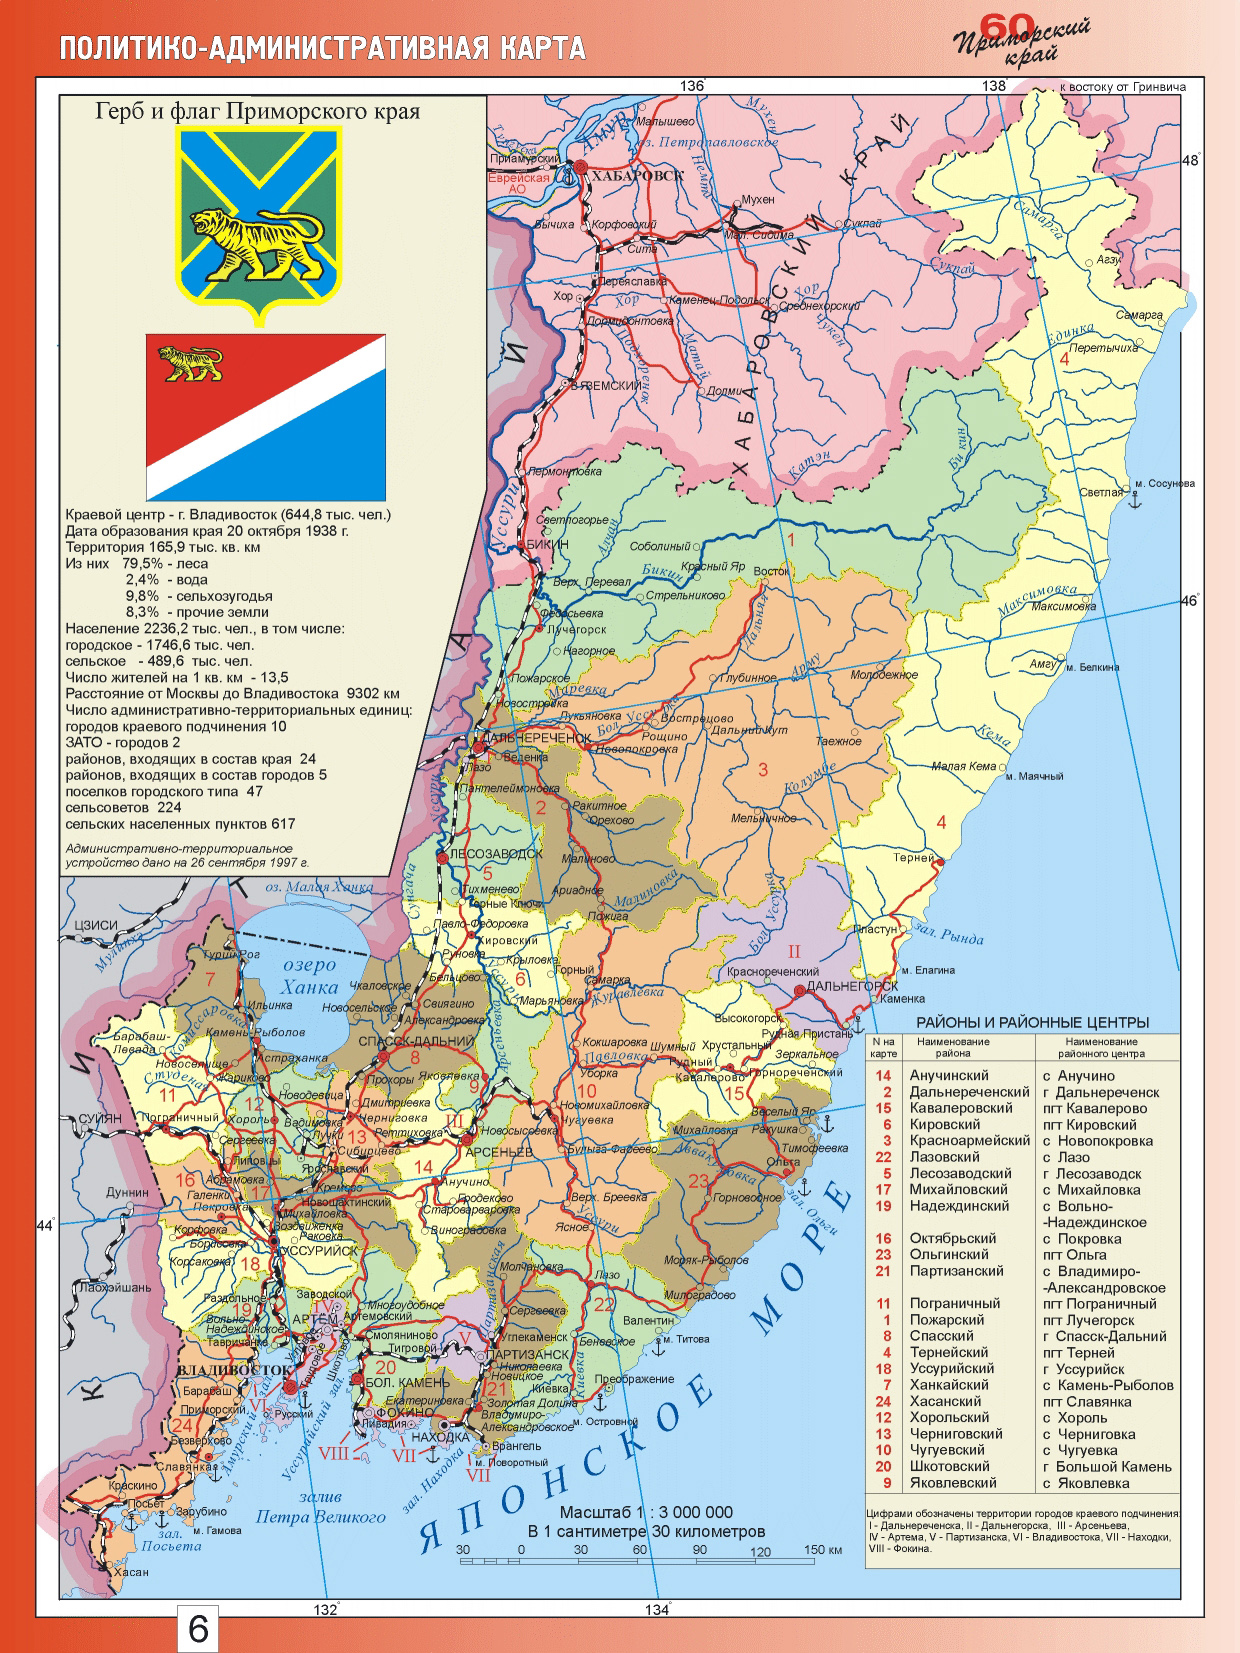 Политико-административная карта Приморского края. Большая подробная картаПриморского края